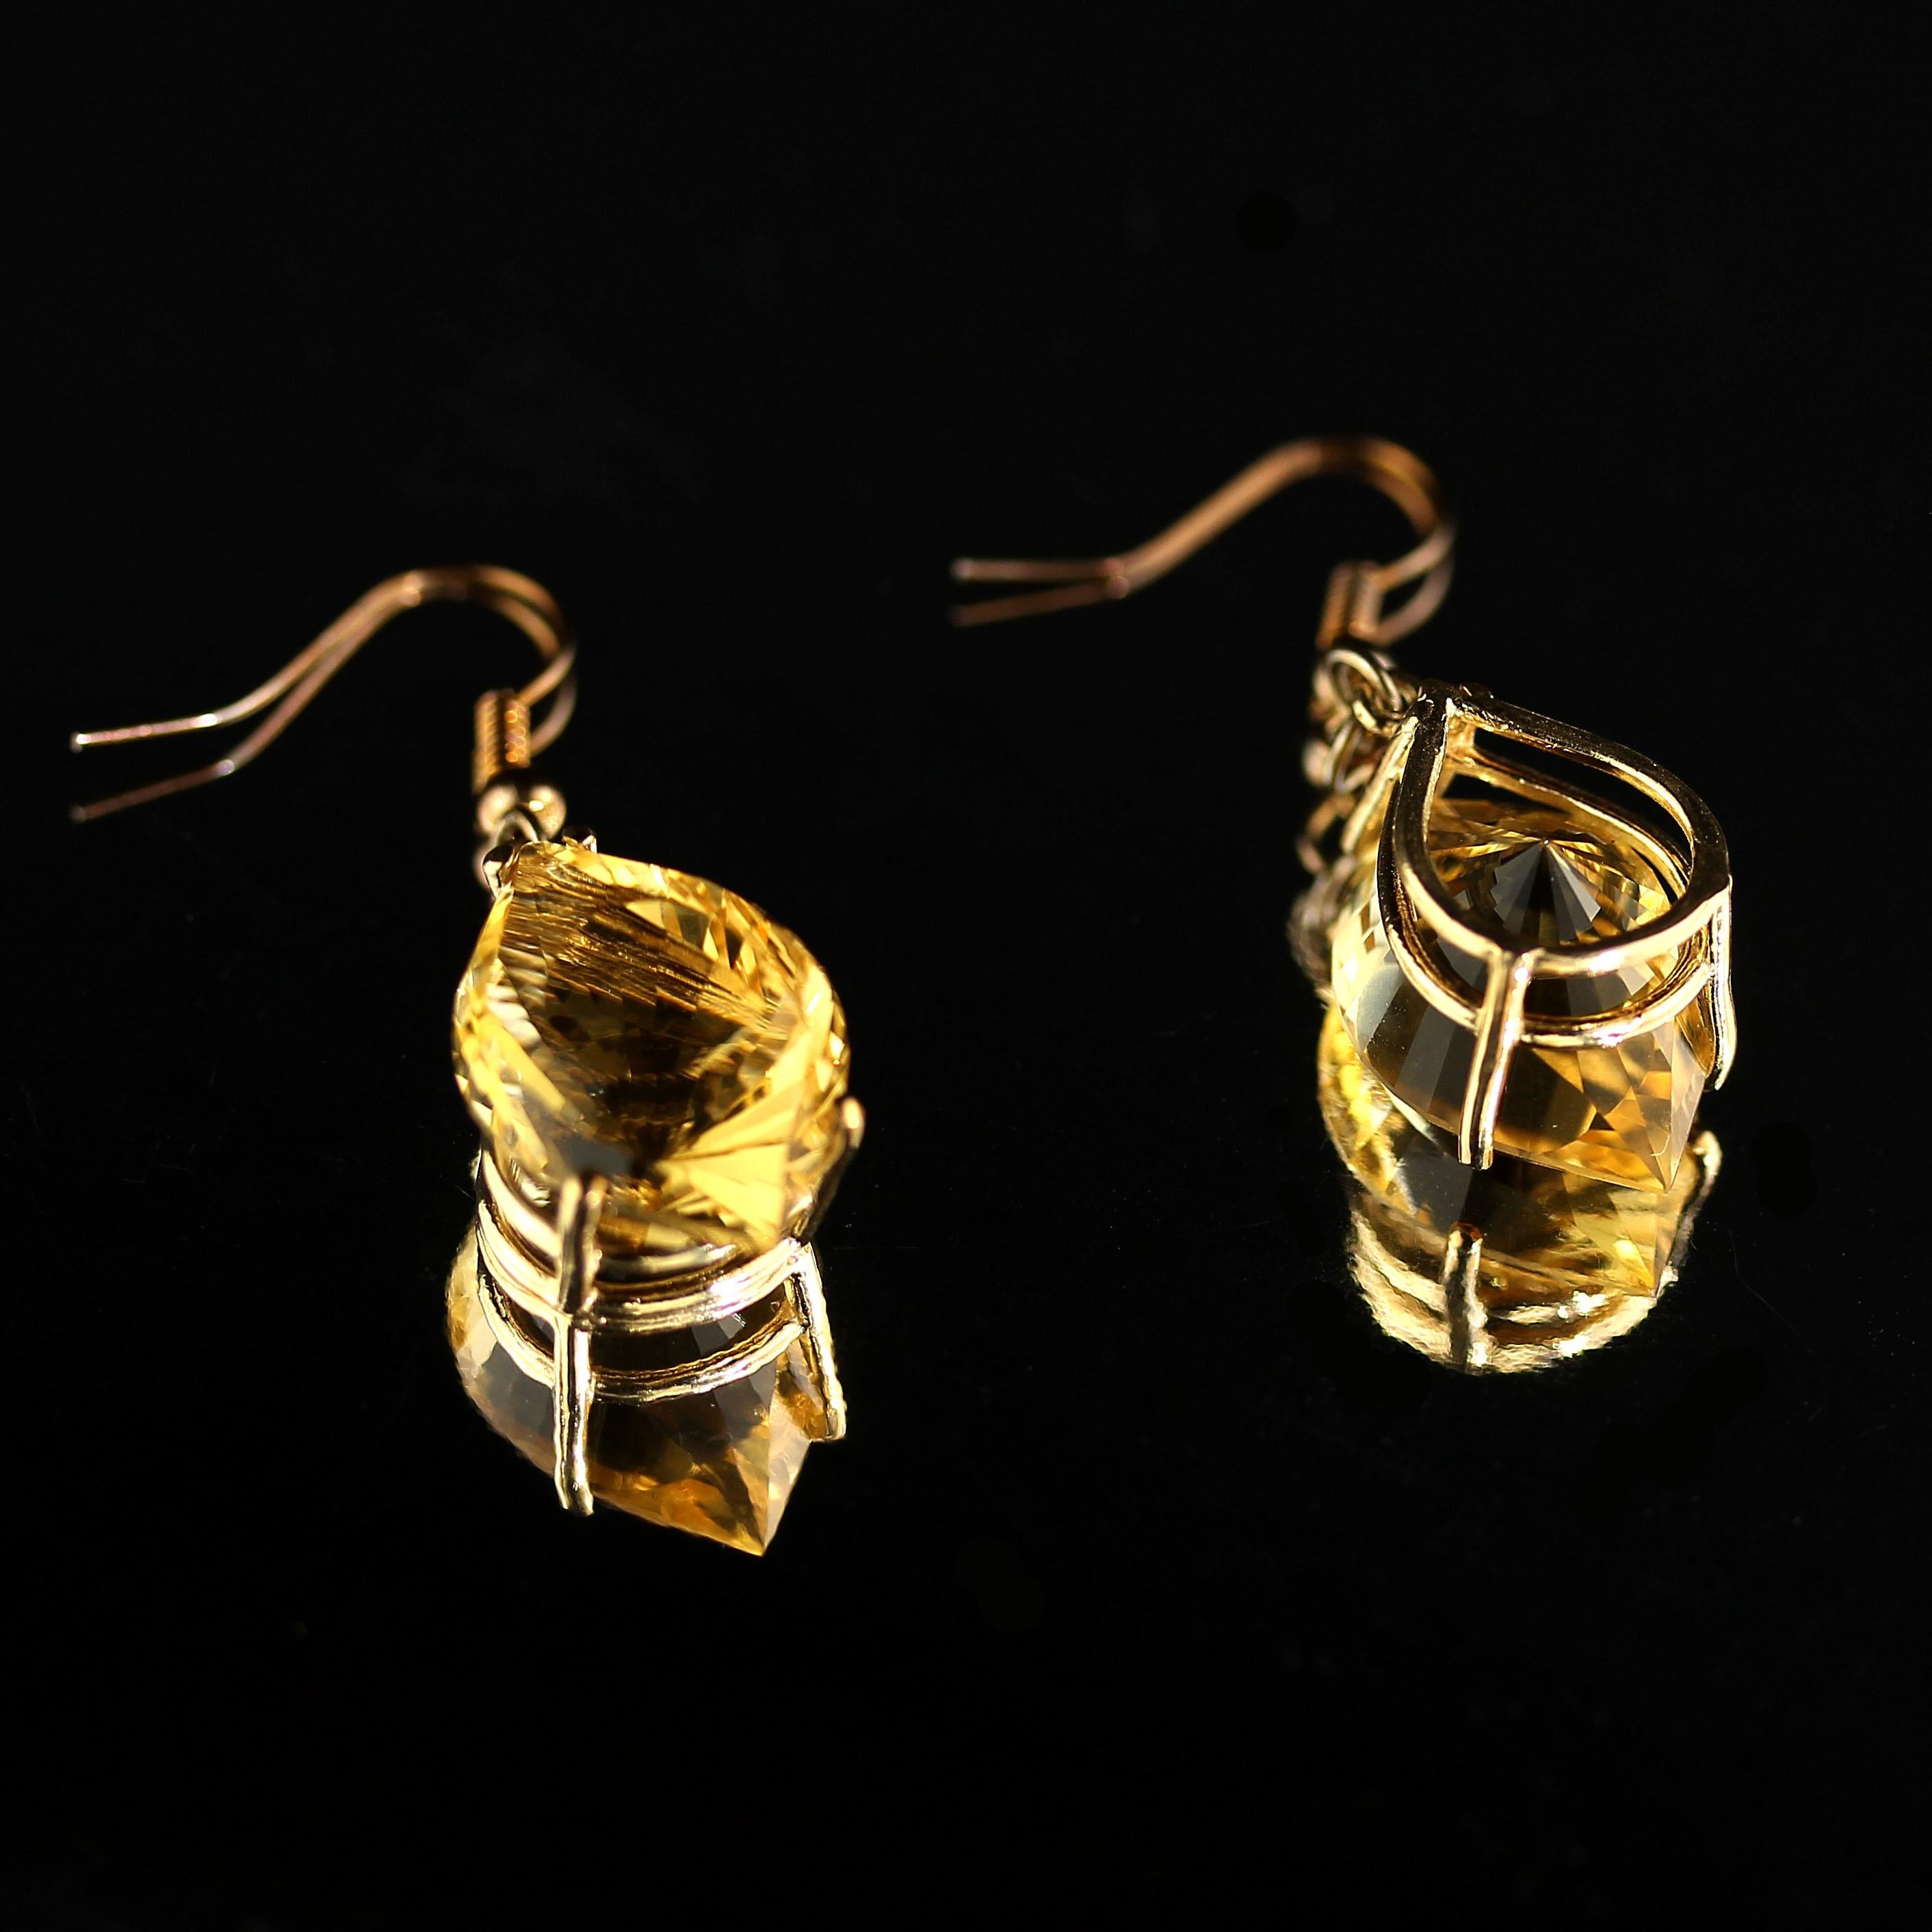 AJD Unique Fancy Cut Golden Citrine Earrings in 14 Karat Yellow Gold For Sale 6